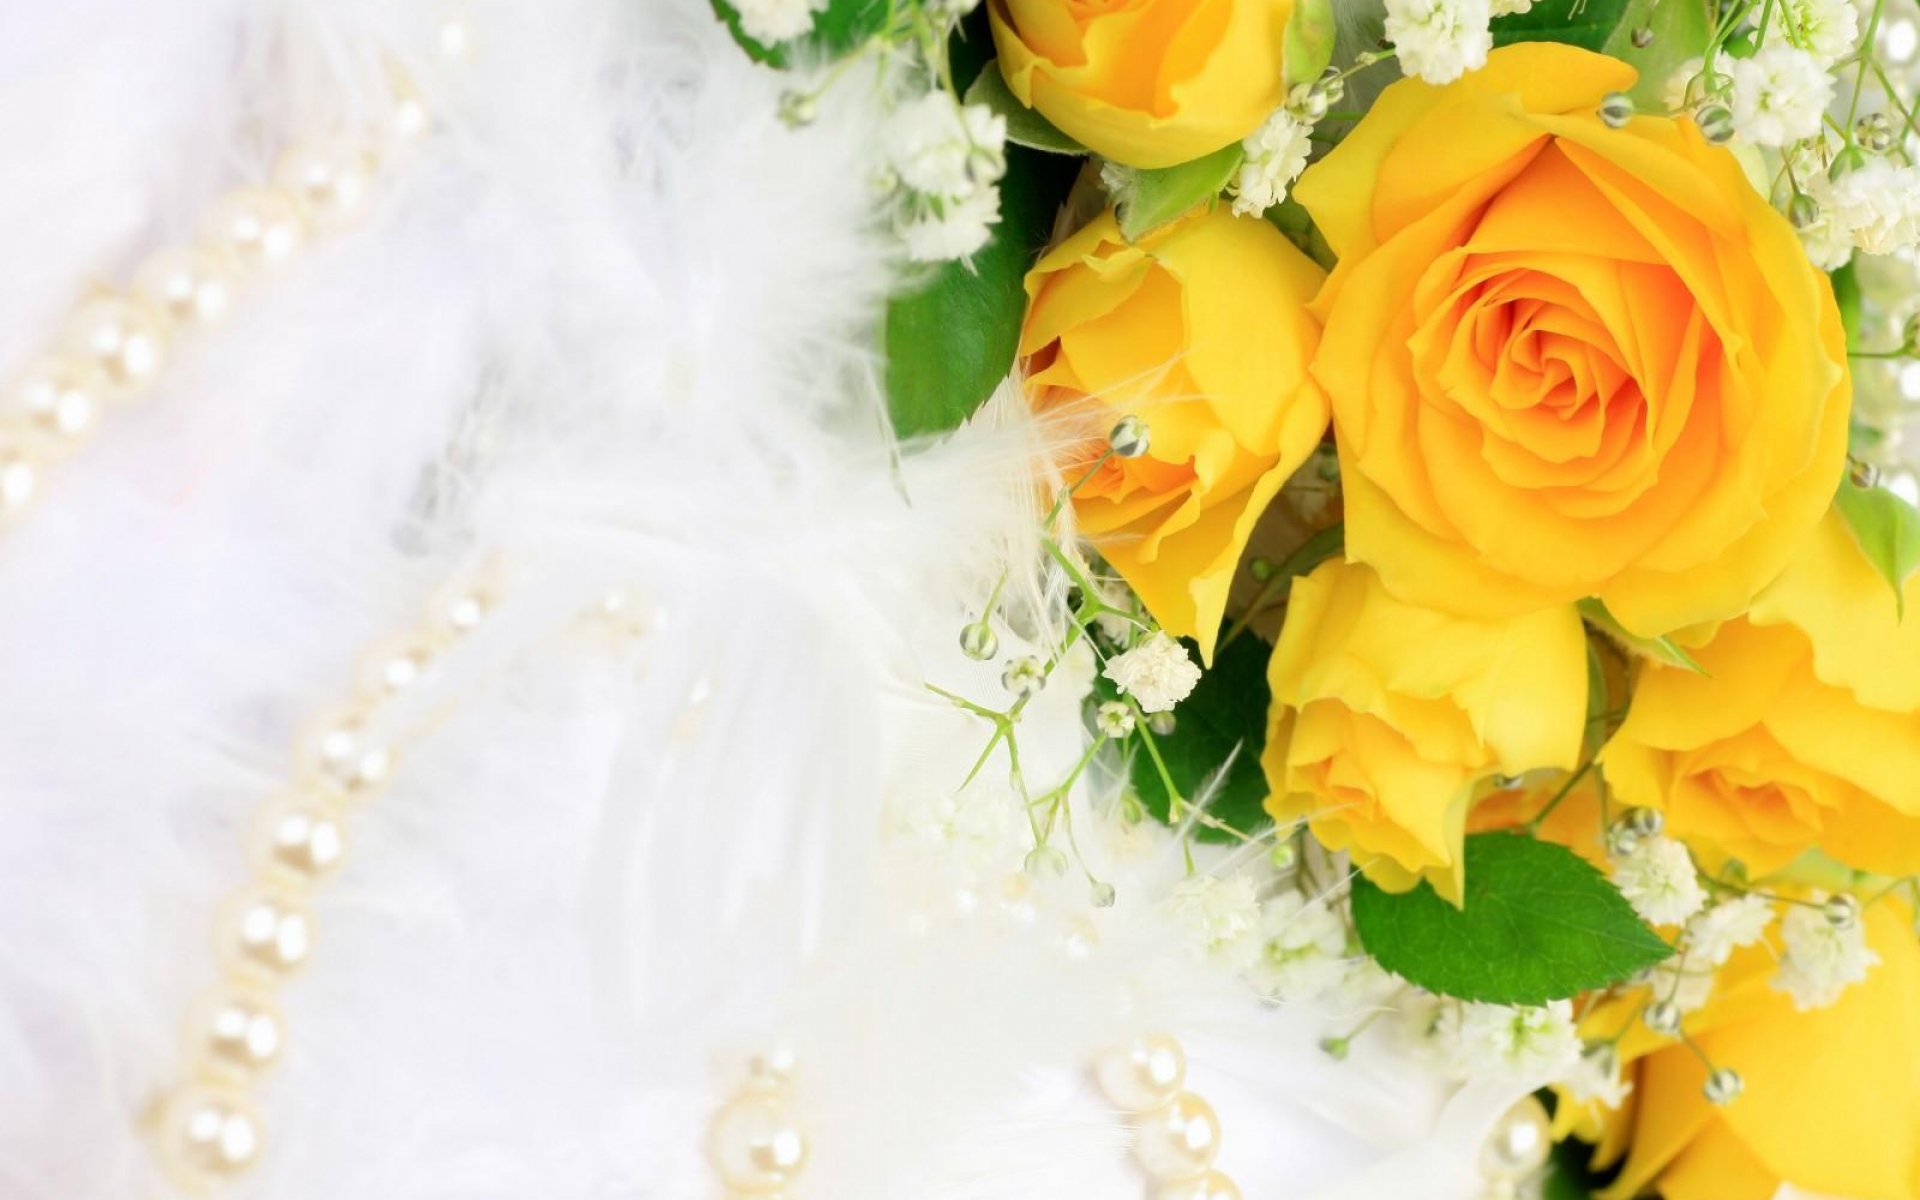 Картинки Розы, цветы, цветок, желтый, гипсофила, жемчуг, украшения фото и обои на рабочий стол